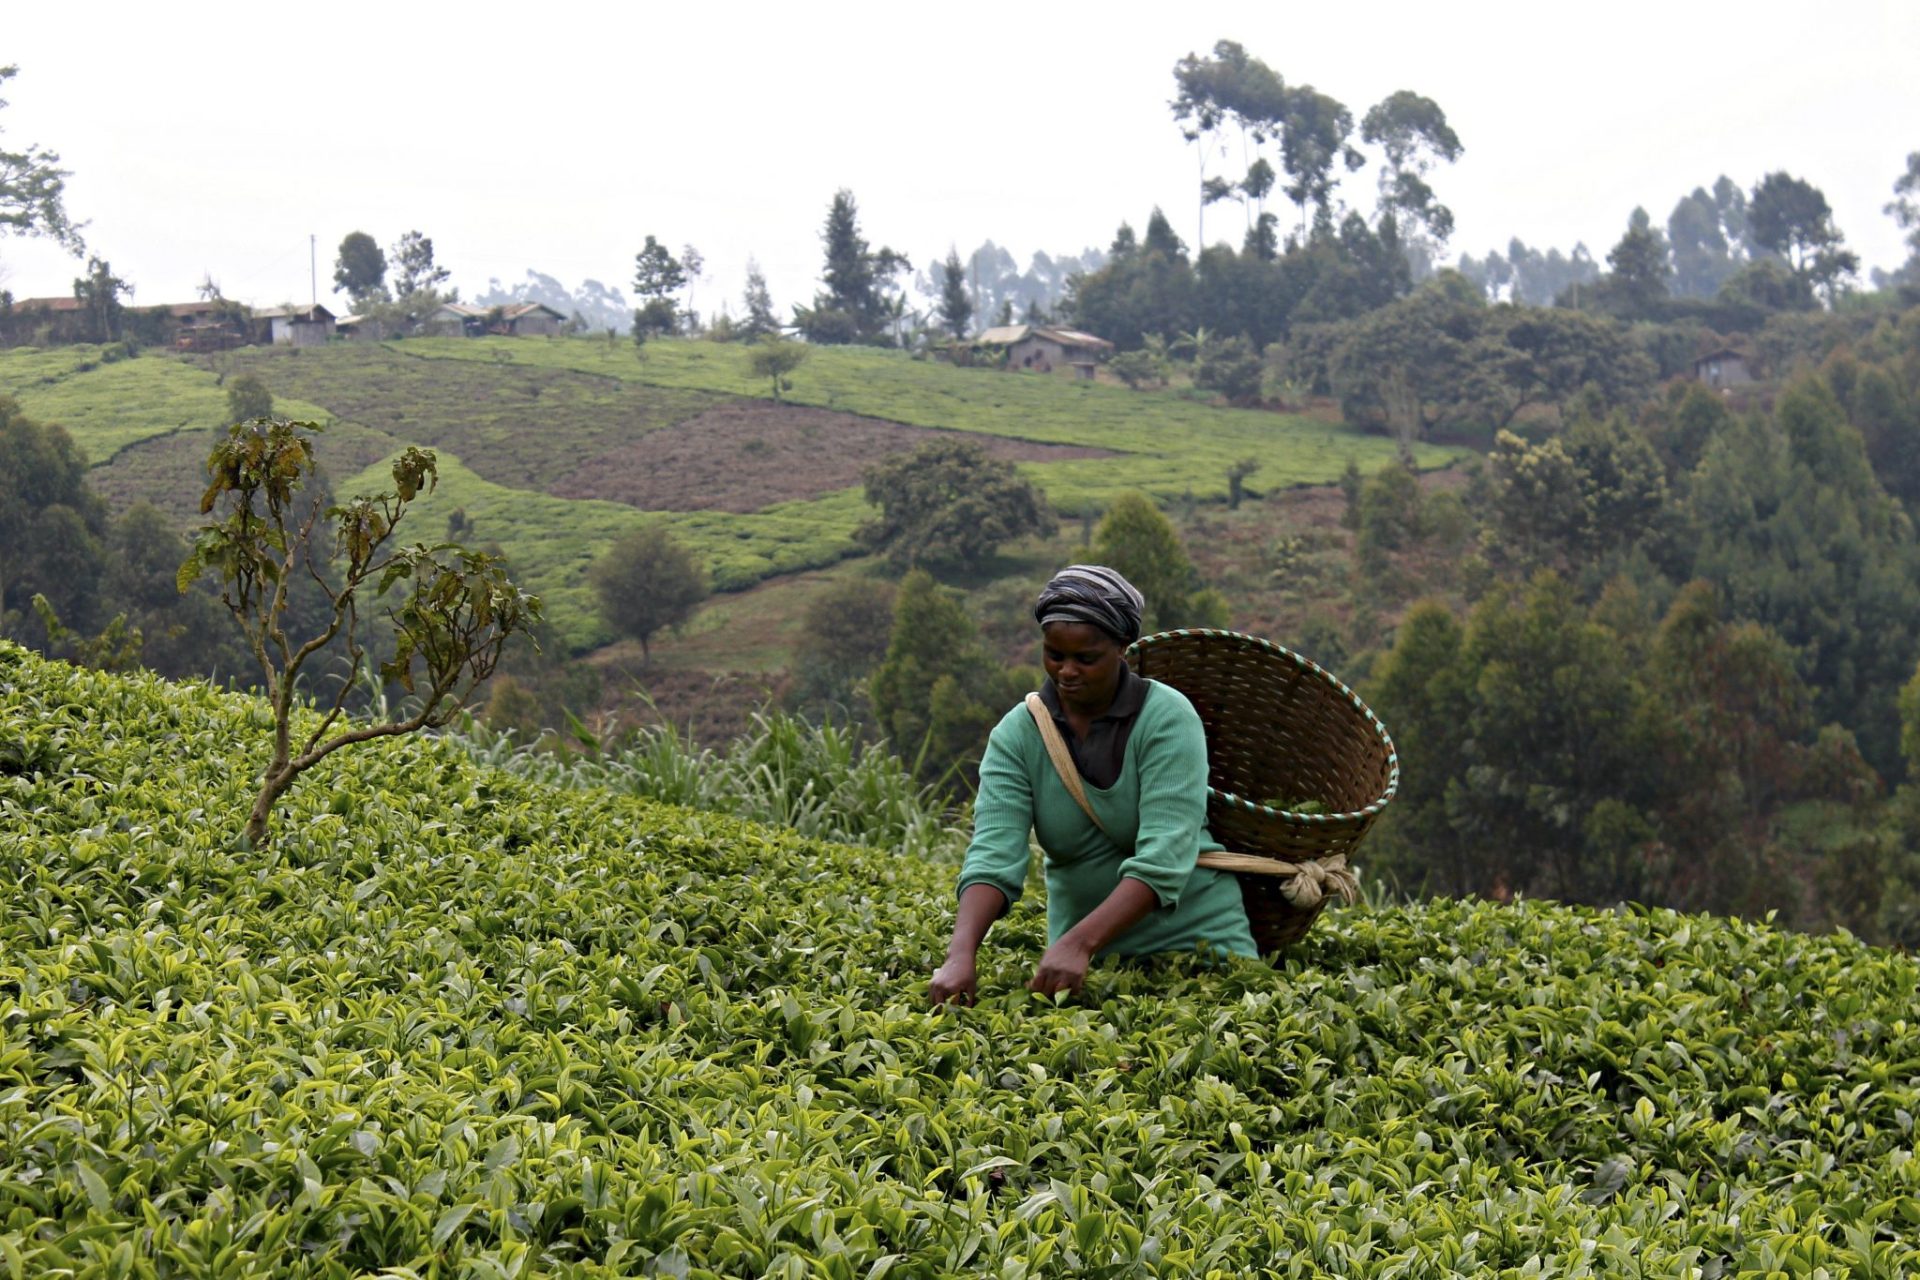 Pequeños agricultores de la provincia central de Muranga, al norte de Nairobi, luchan cada día para combatir el cambio climático, que está afectando su principal sustento de vida: el té.